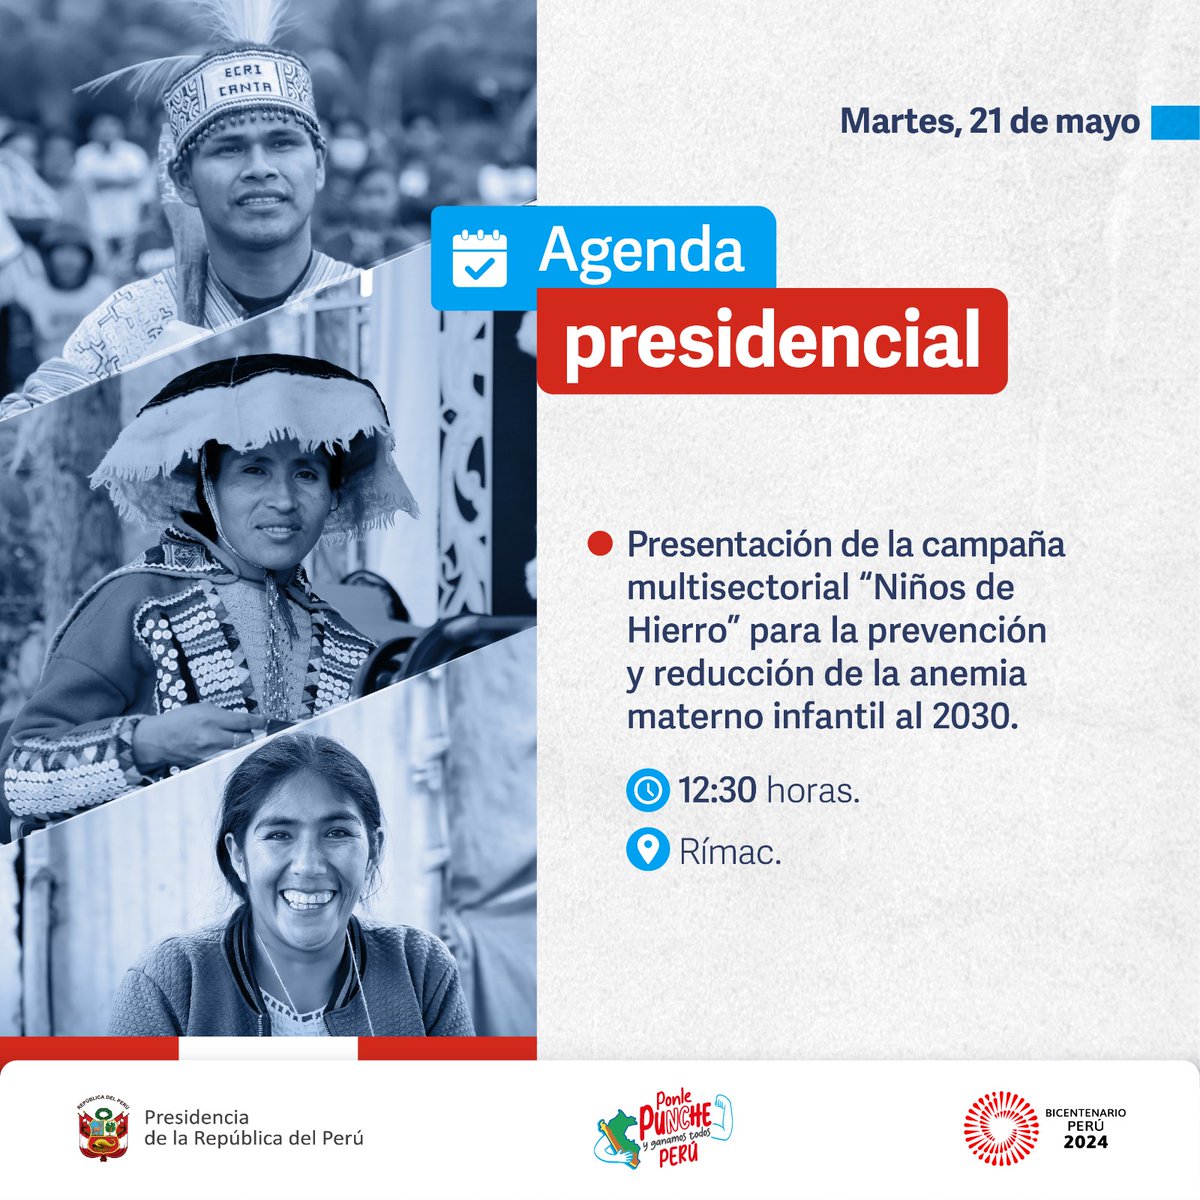 🇵🇪 #AgendaPresidencial | La presidenta Dina Boluarte participará en el lanzamiento de la campaña multisectorial 'Niños de Hierro', para prevenir y reducir la anemia materno infantil. 🤰🏻 👦🏻 👧🏻  #PonlePunchePerú 💪#BicentenarioPerú2024